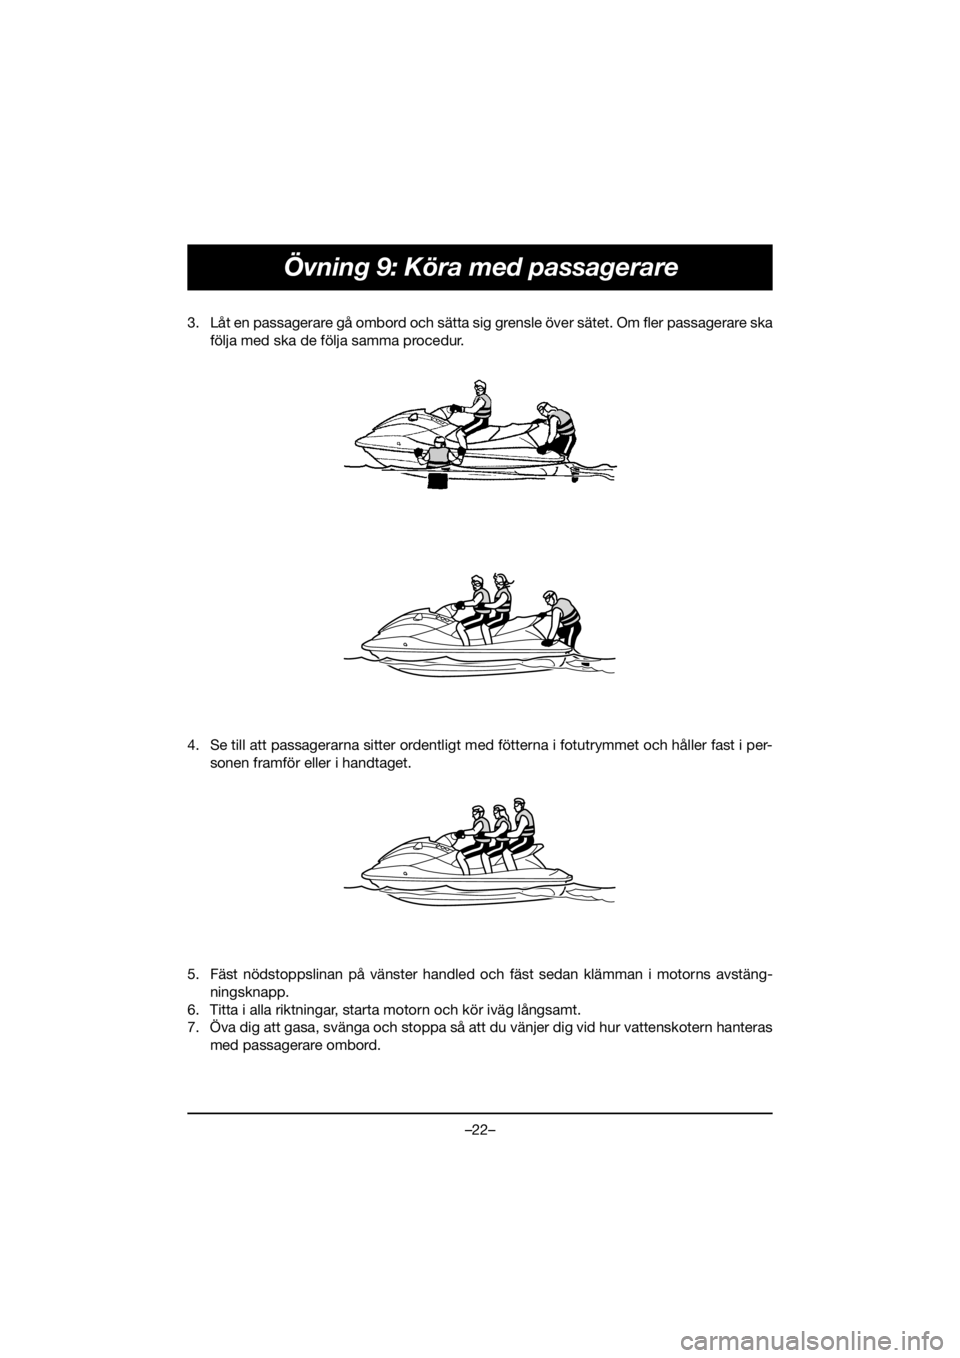 YAMAHA EX DELUXE 2020  Manuale duso (in Italian) –22–
Övning 9: Köra med passagerare
3. Låt en passagerare gå ombord och sätta sig grensle över sätet. Om fler passagerare ska
följa med ska de följa samma procedur. 
4. Se till att passag